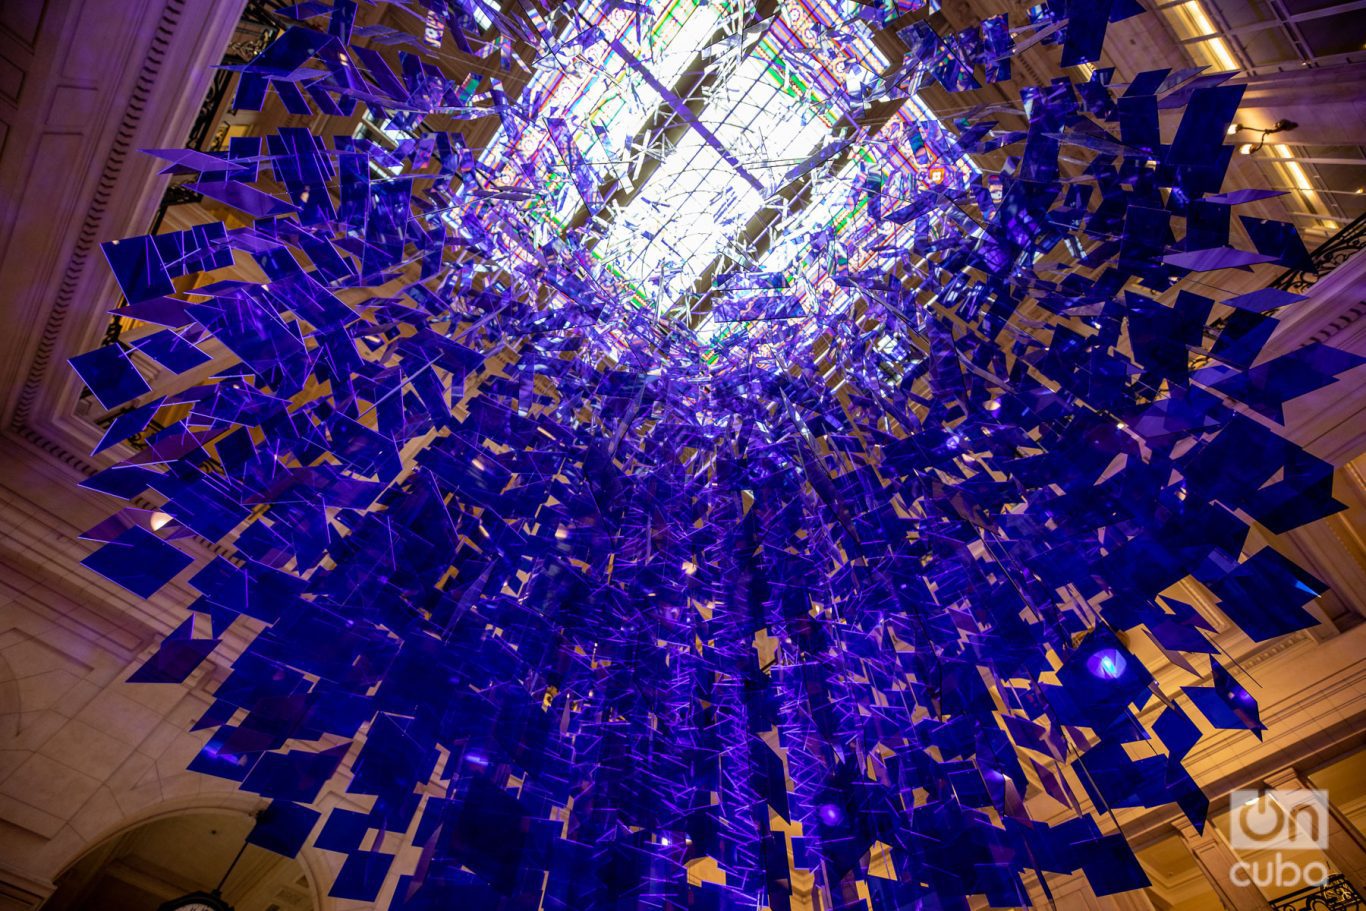 Detalle de "La esfera azul", instalación de Julio Le Parc en el Centro Cultural Kirchner. Foto: Kaloian.